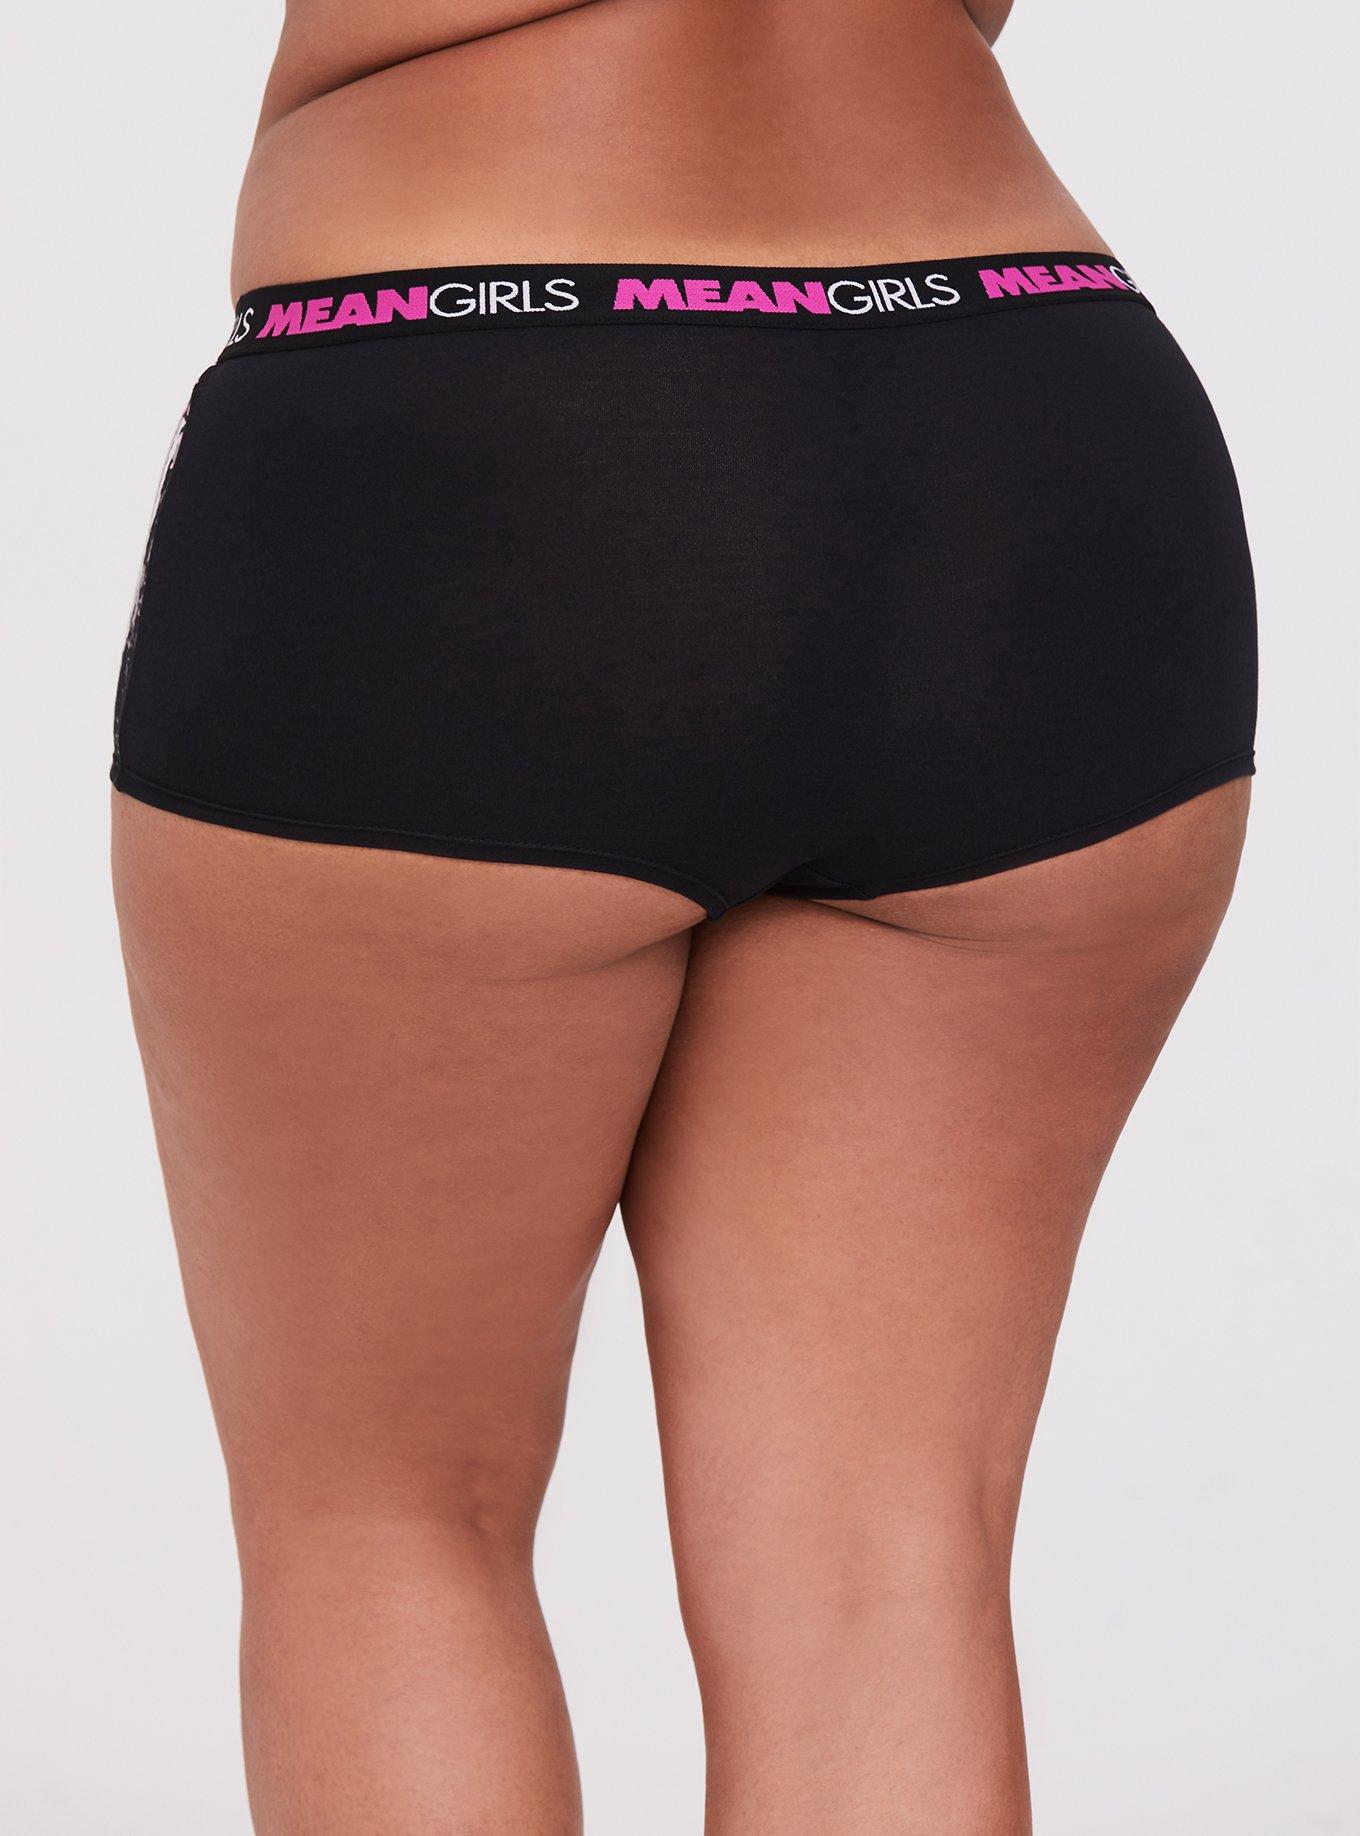 Plus Size - Grease Pink Ladies Black Cotton Boyshort Panty - Torrid